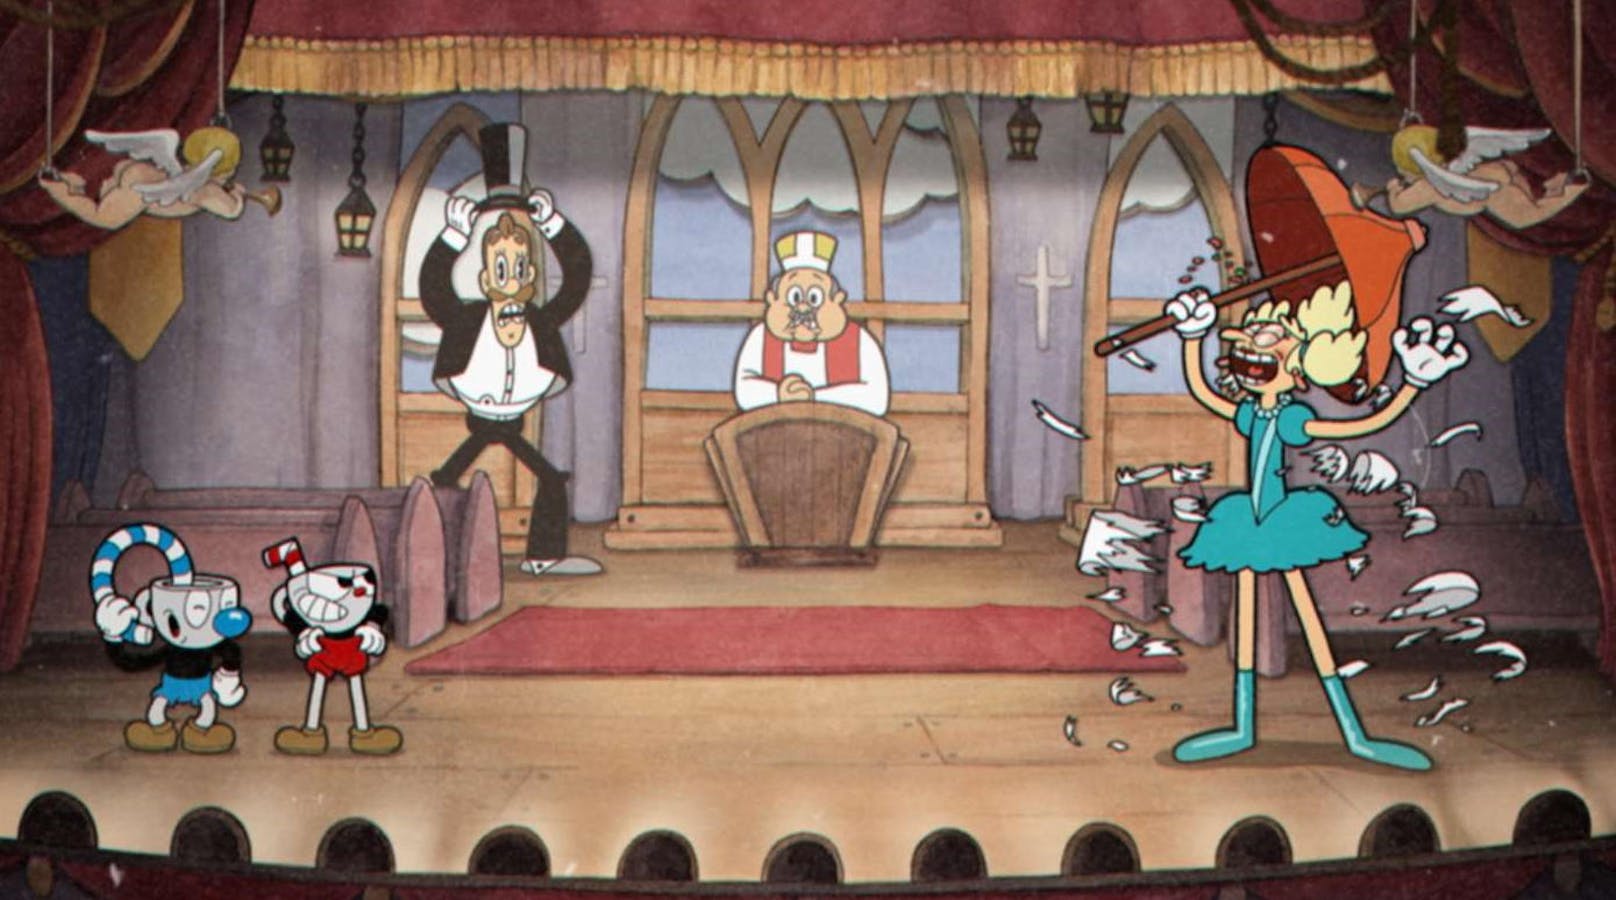 Auch grafisch ist das Game eher ungewöhnlich, zeigt sich im Cartoon-Gewand, das man aus der Feder von Walt Disney und Max Fleischer in den 30er-Jahren kennt. Ganz klar: Dieses Spiel hat nicht alle Tassen im Schrank.